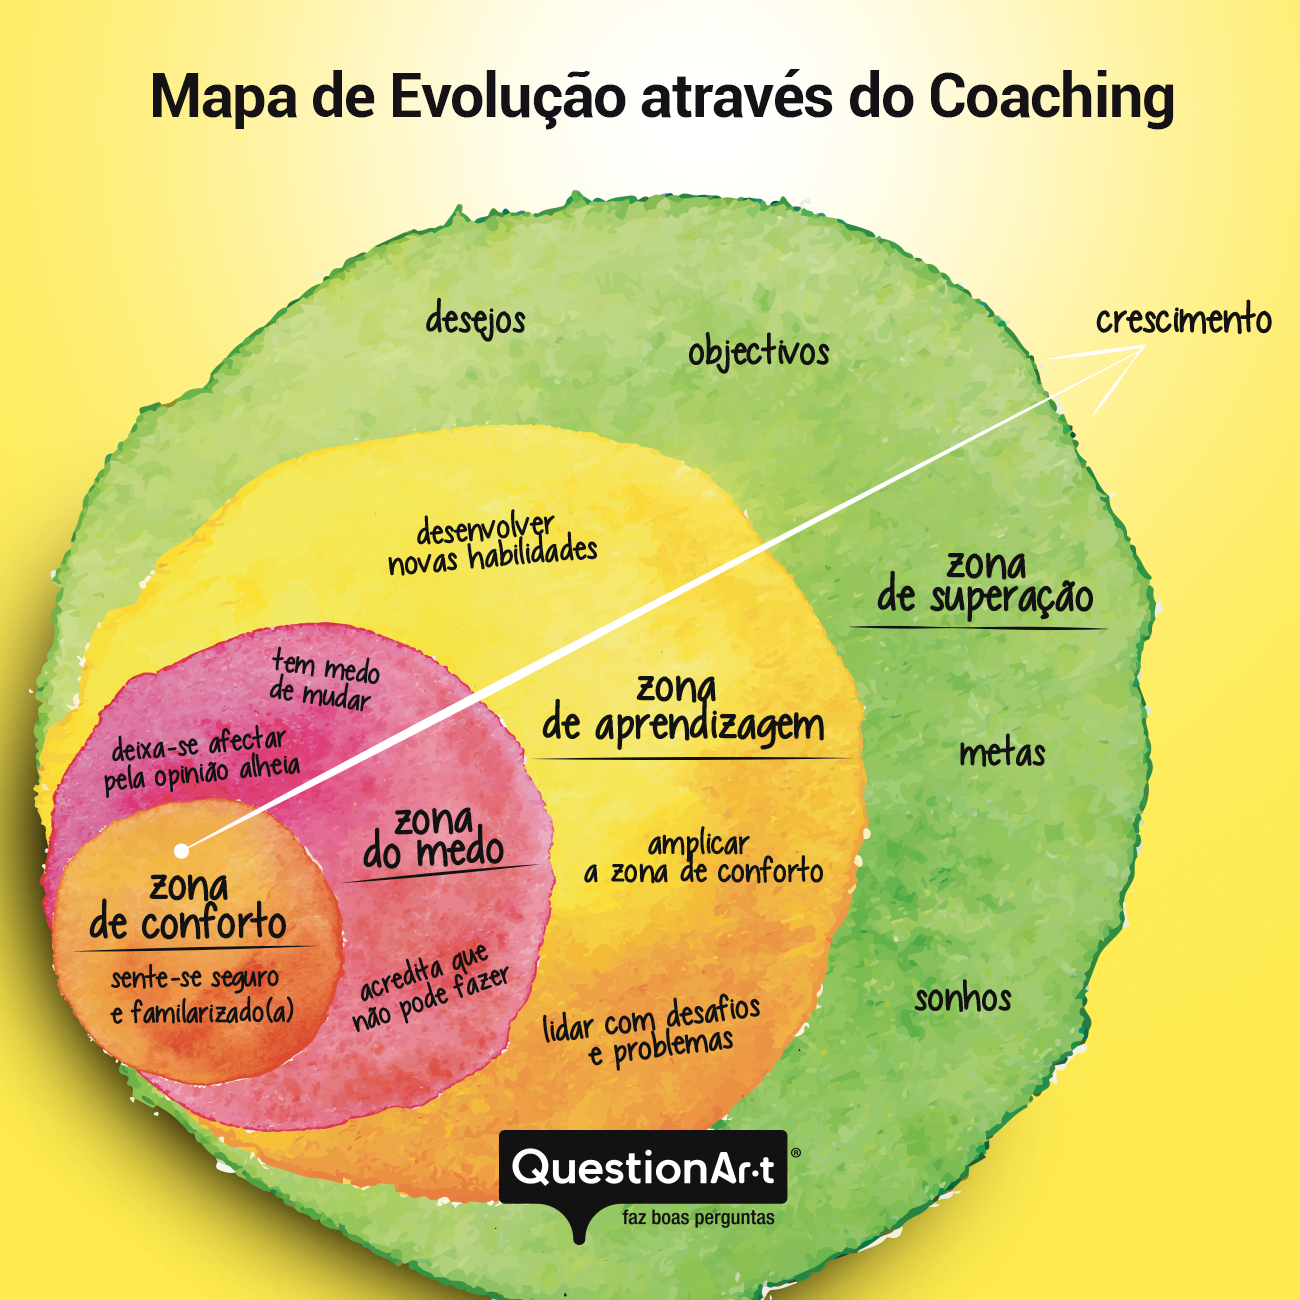 evolução através do Coaching QuestionAr-t